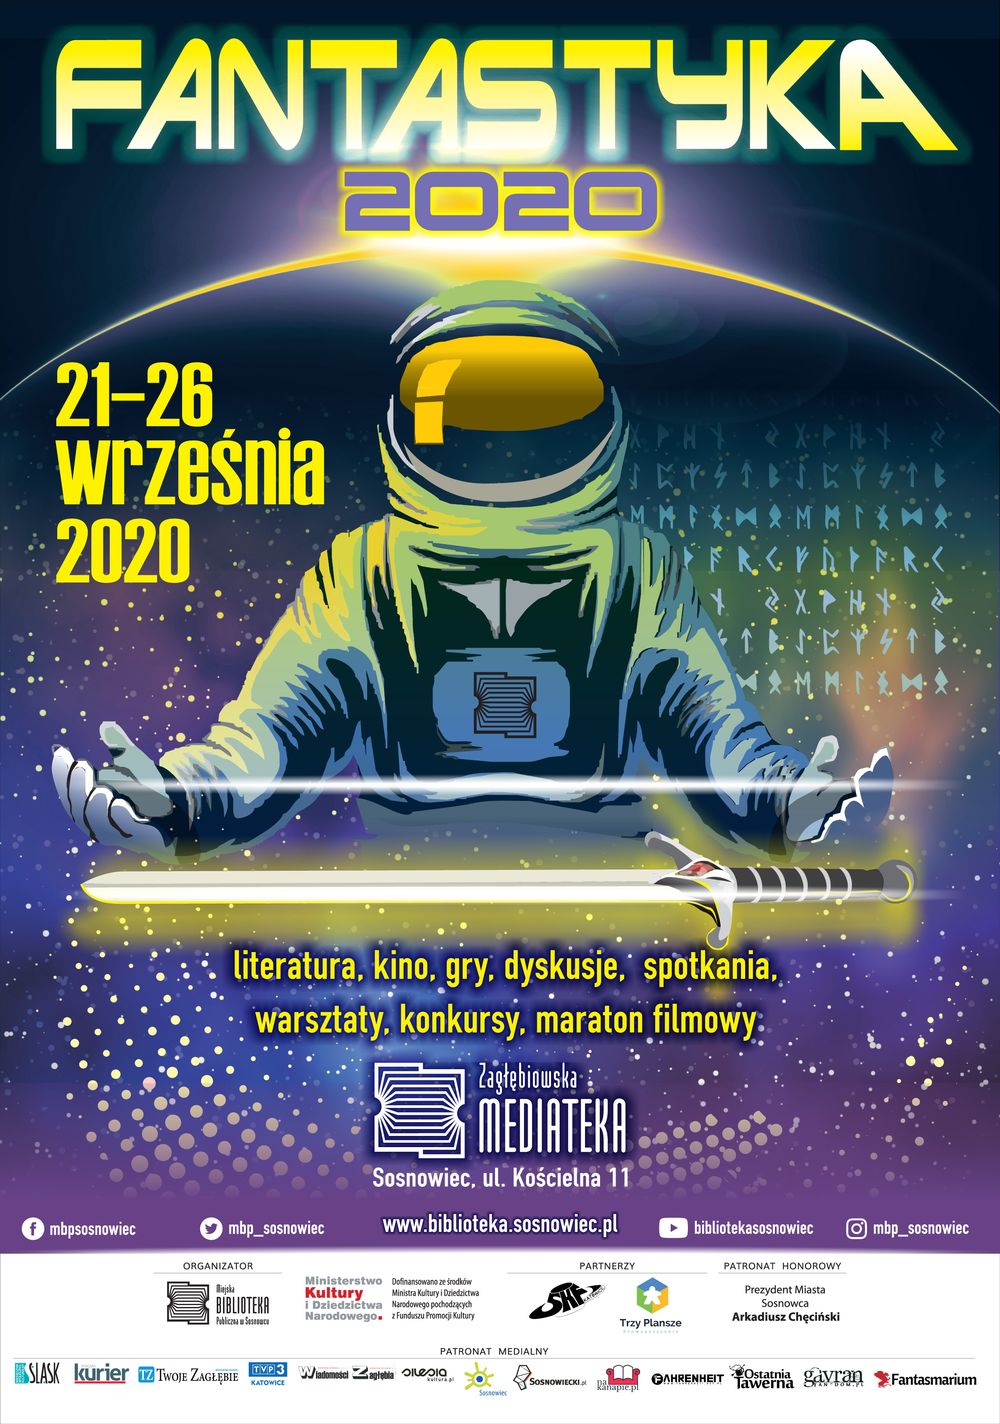 Fantastyka2020 - już od 21 września w Zagłębiowskiej Mediatece